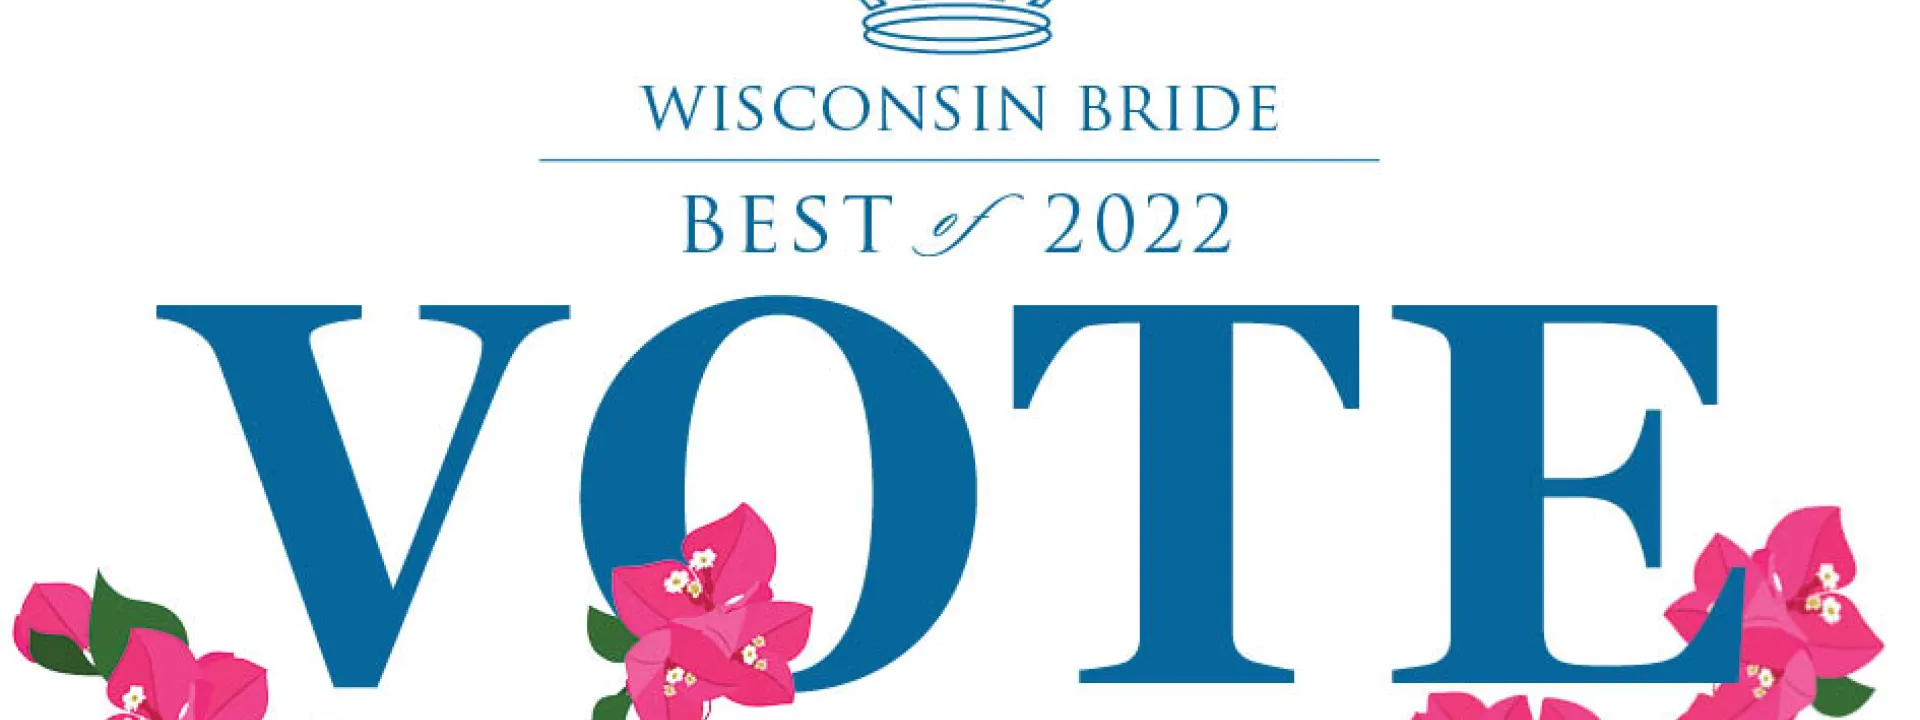 Wisconsin Bride Best of 2022